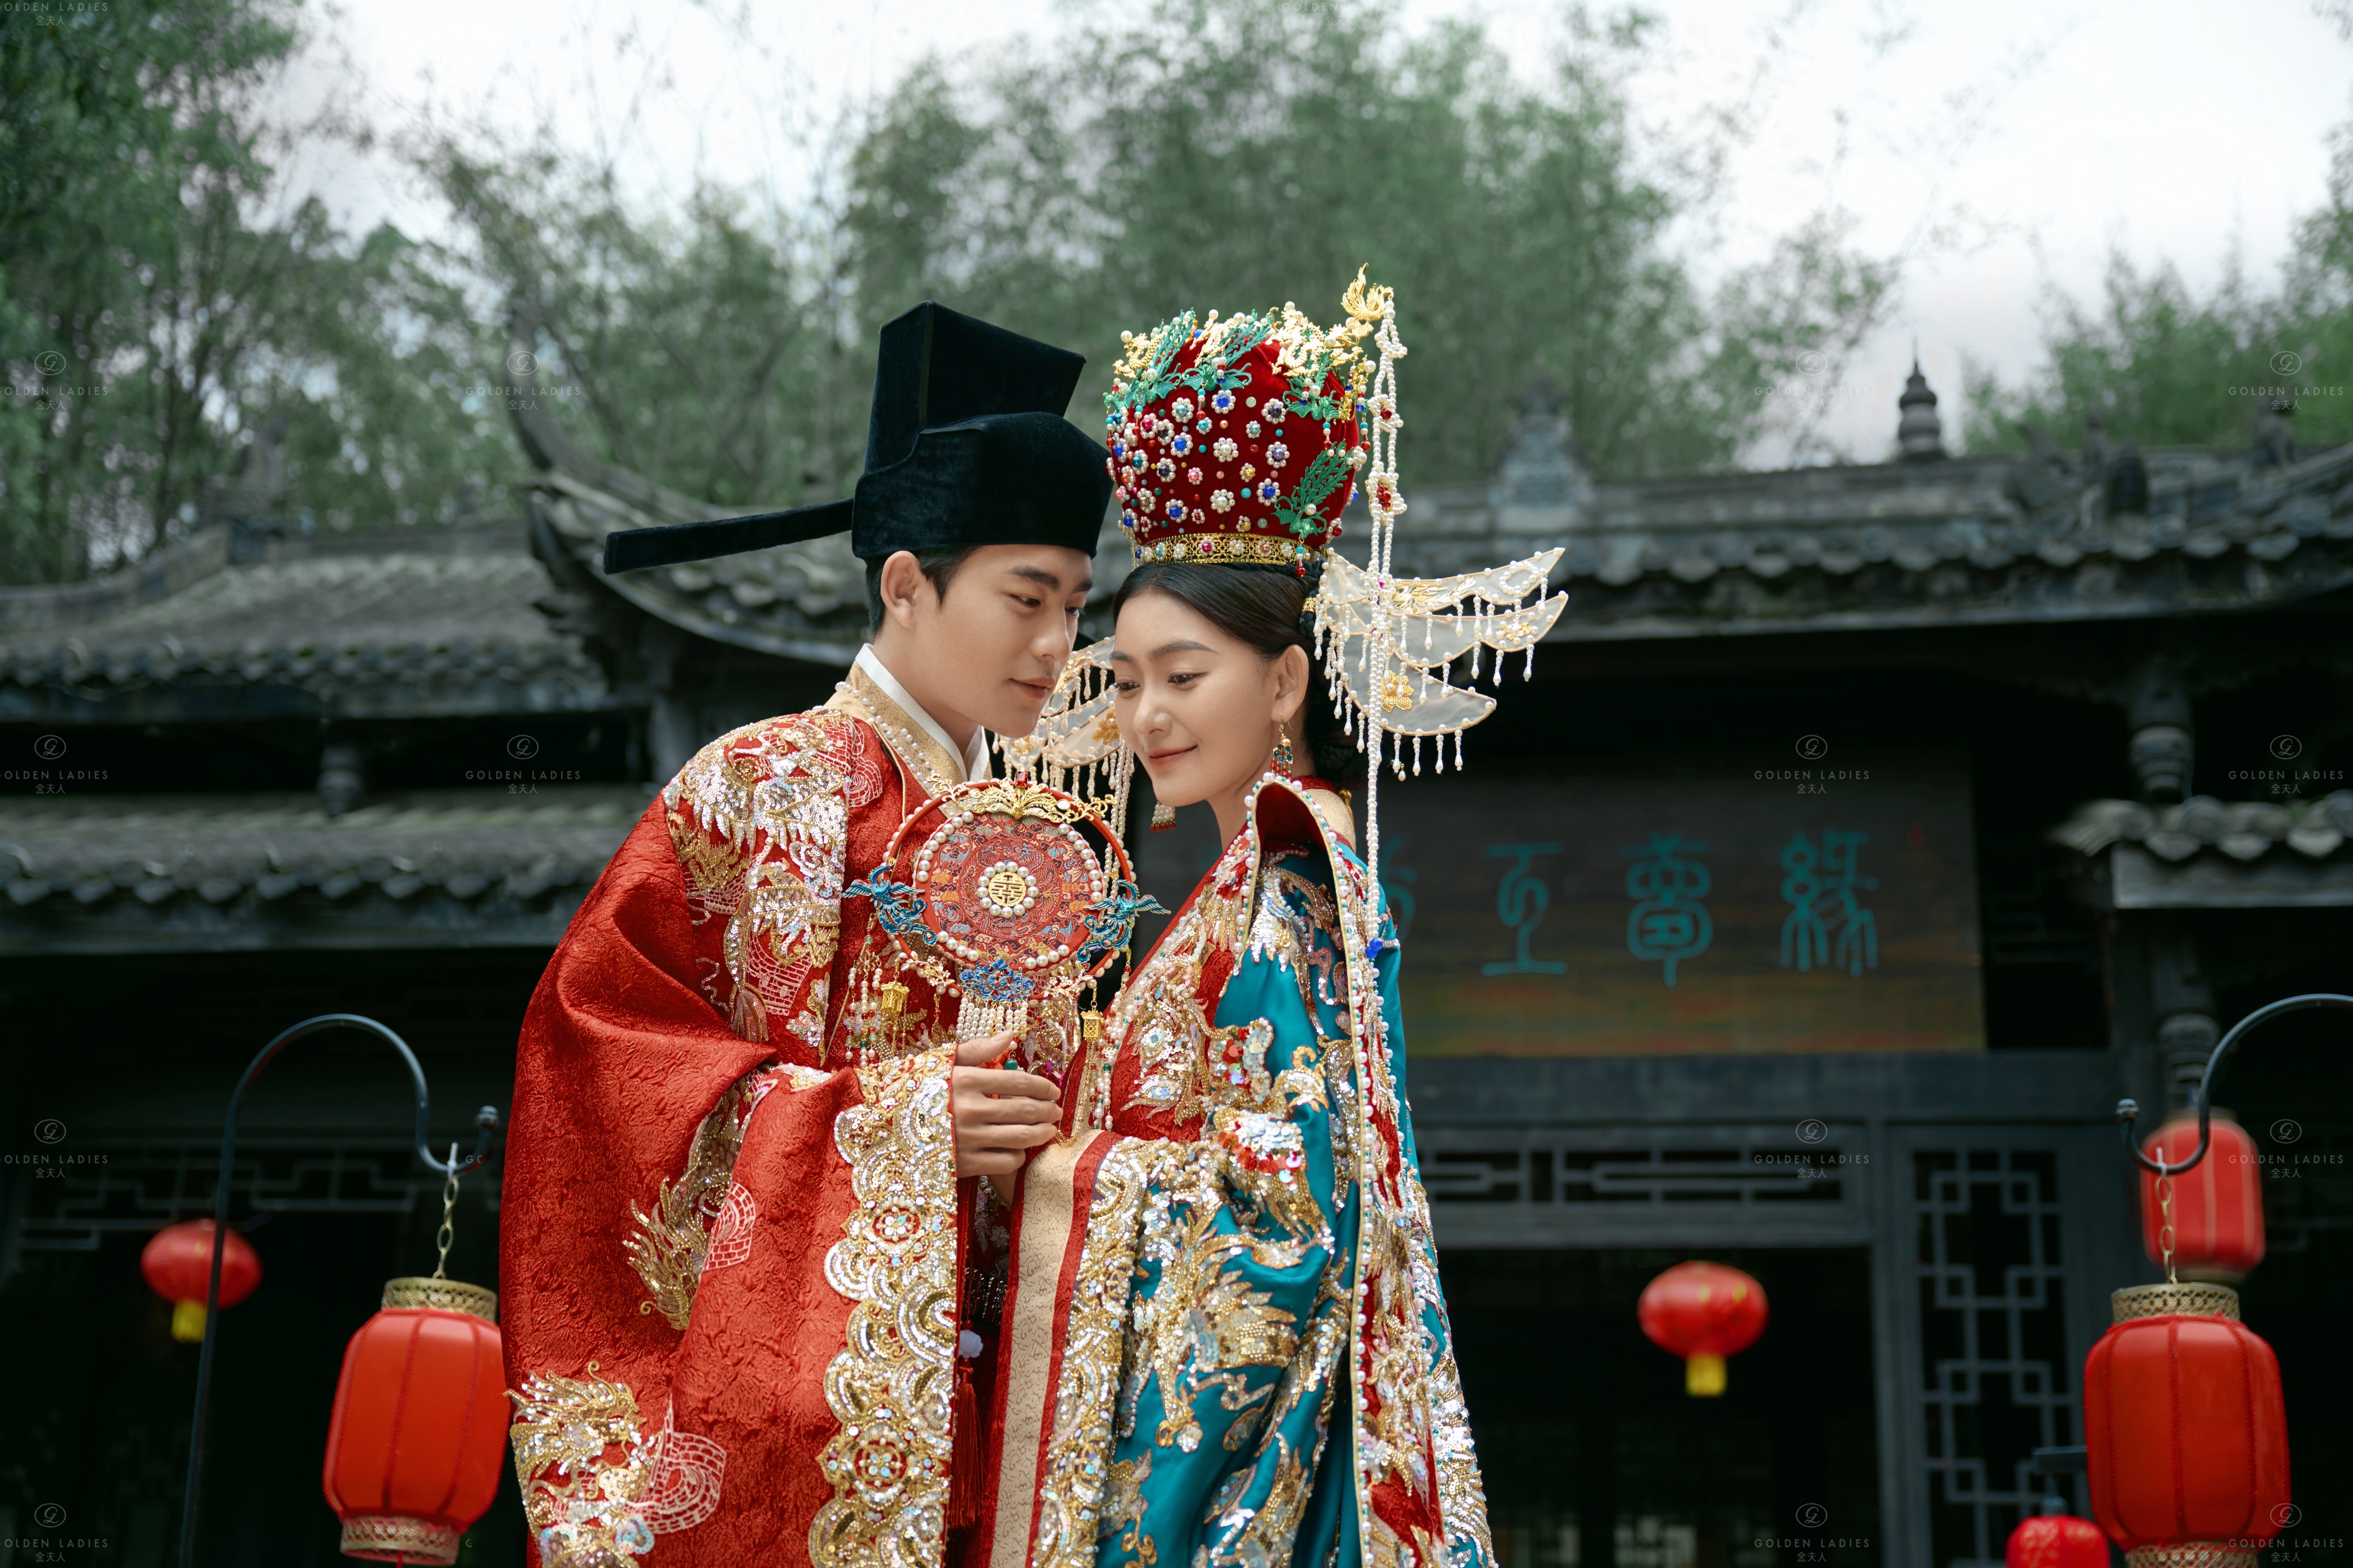 [盛世华服系列]中国人的婚纱照